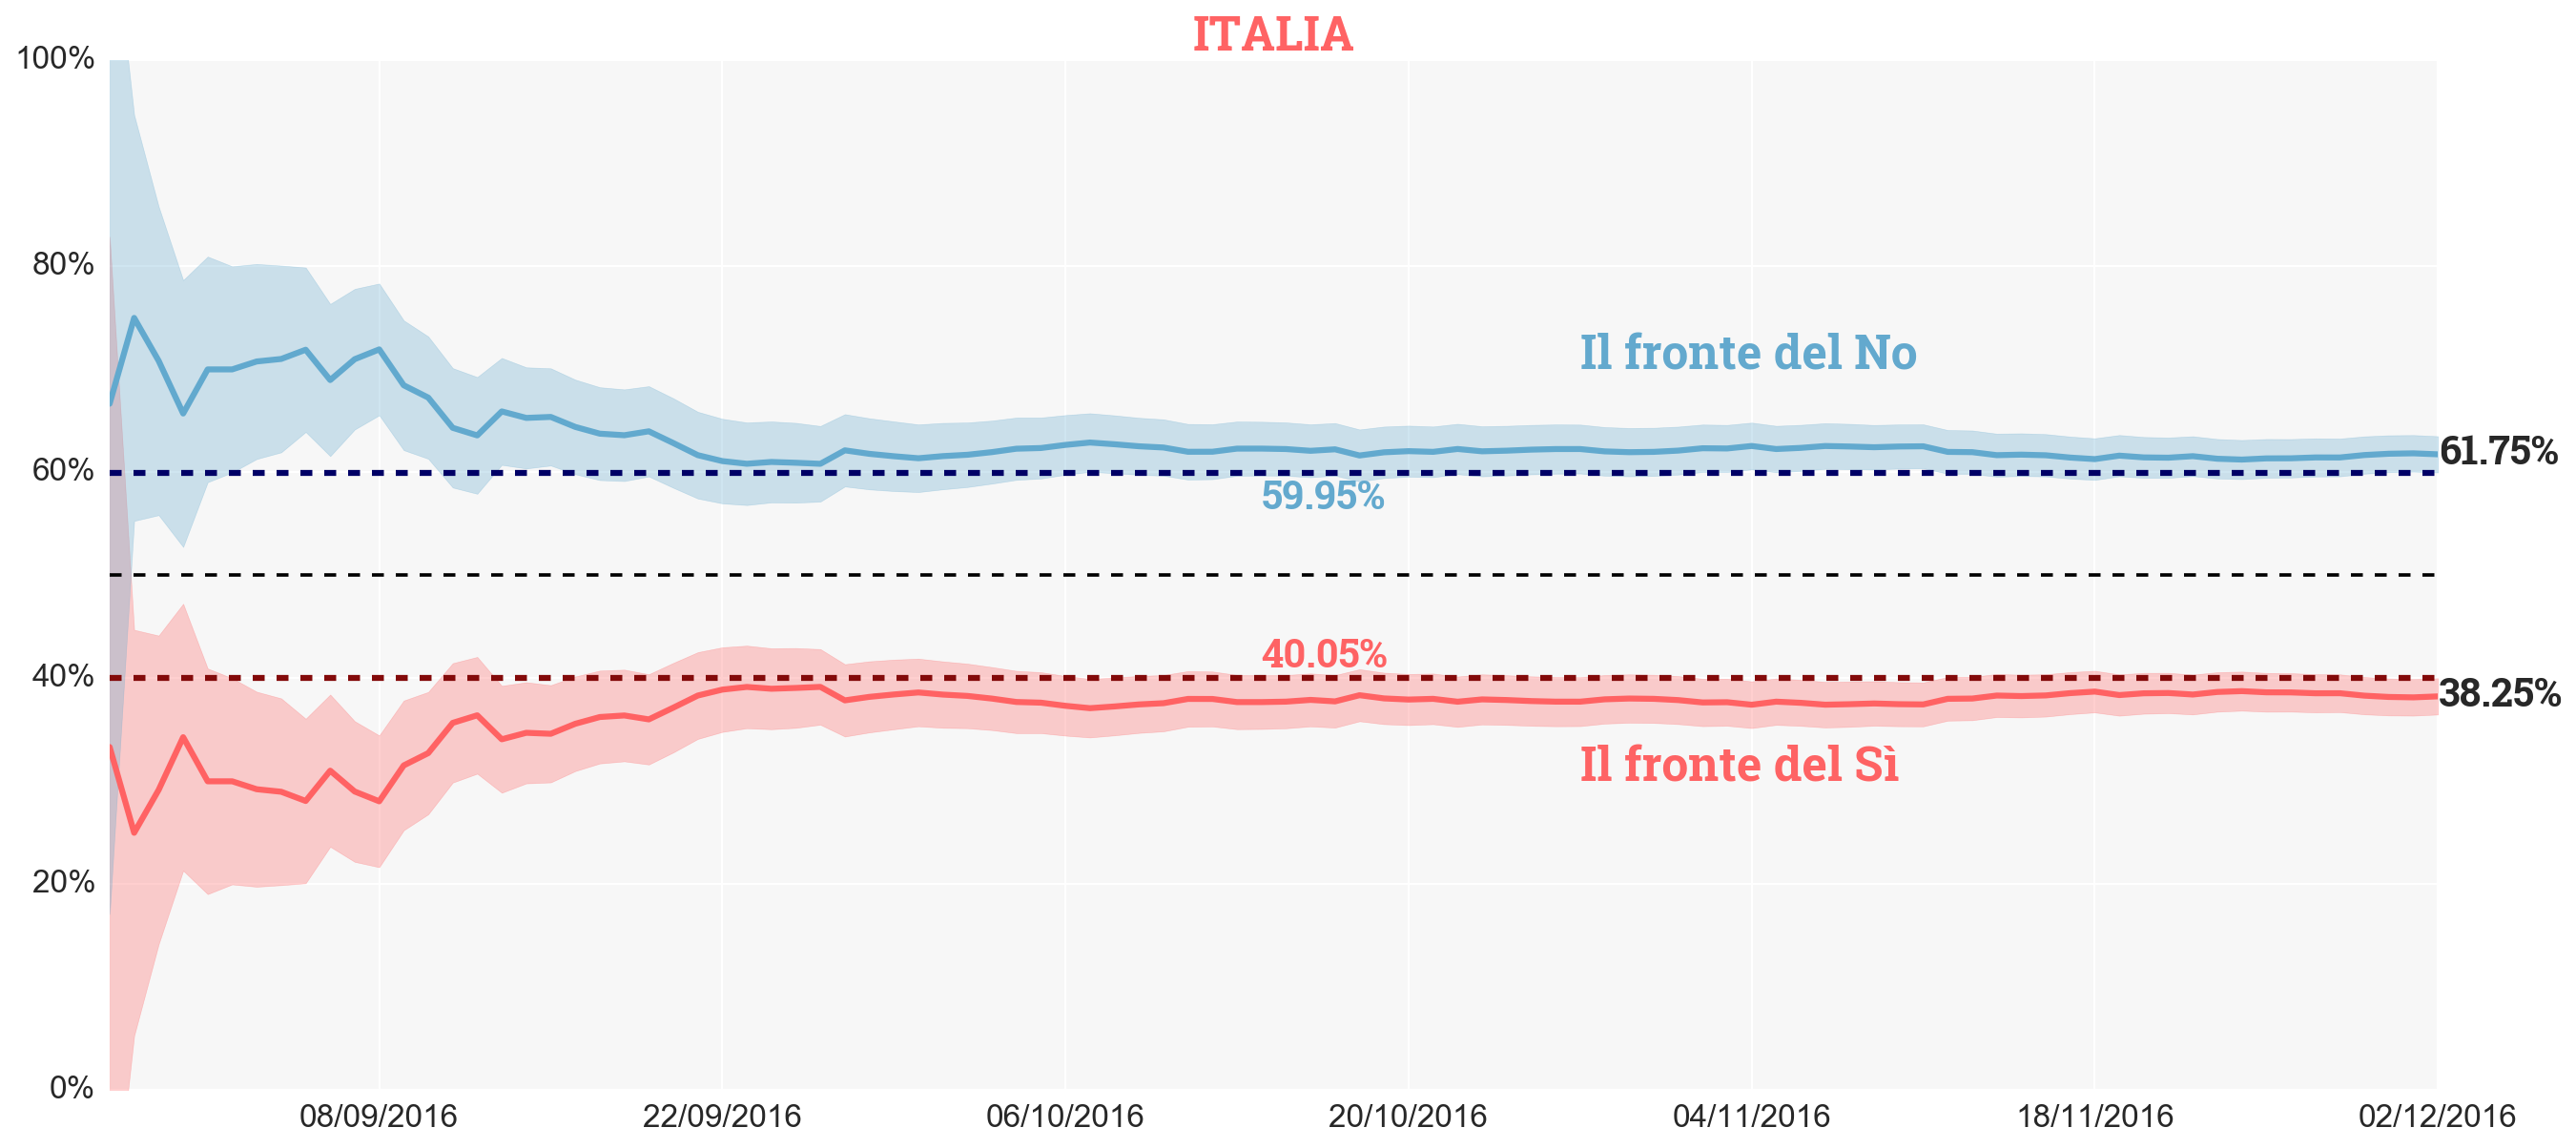 prediction_italia